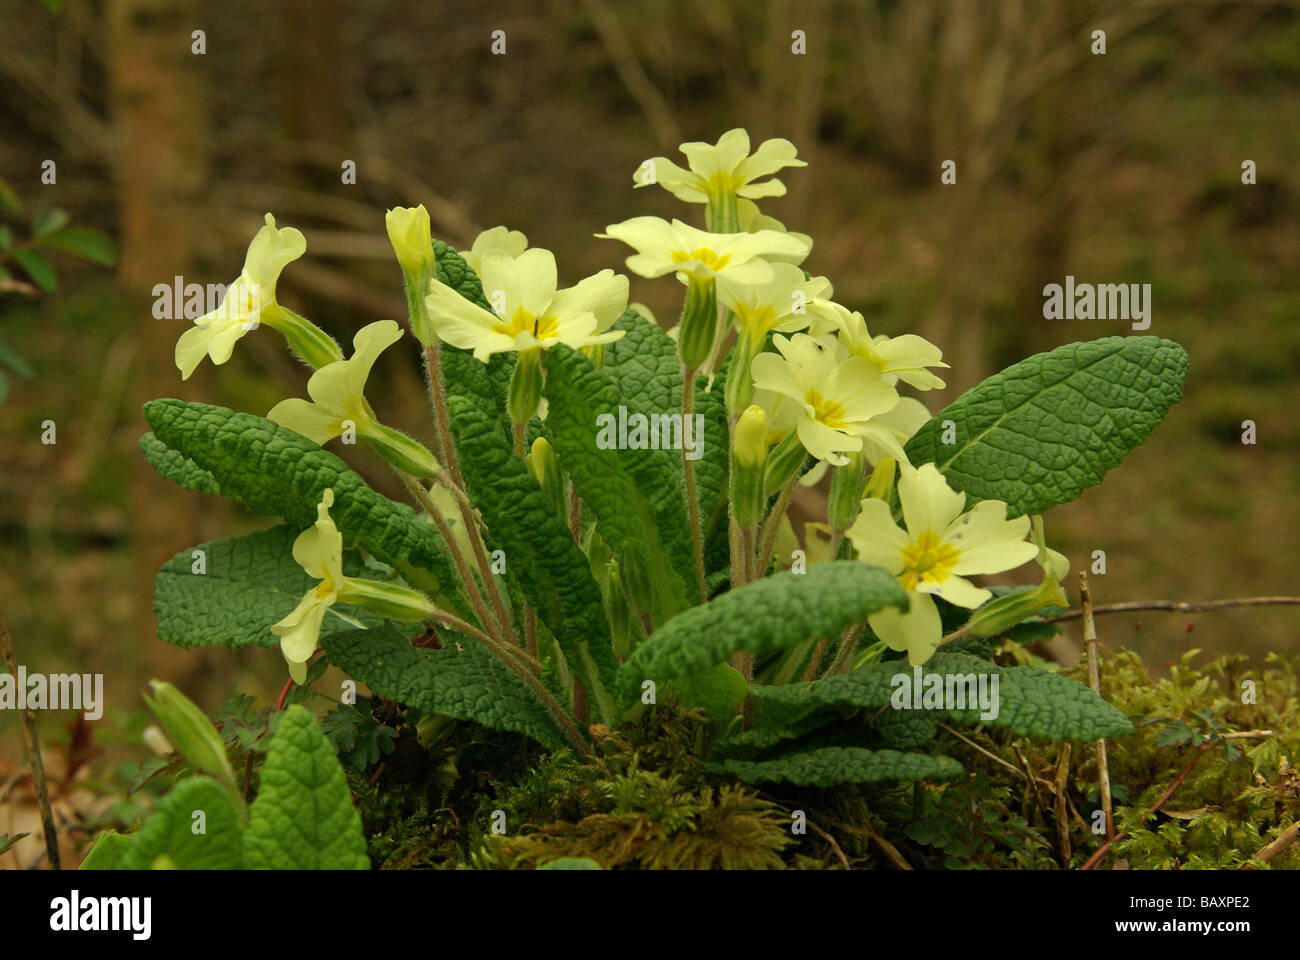 Primroses - Primula vulgaris Stock Photo